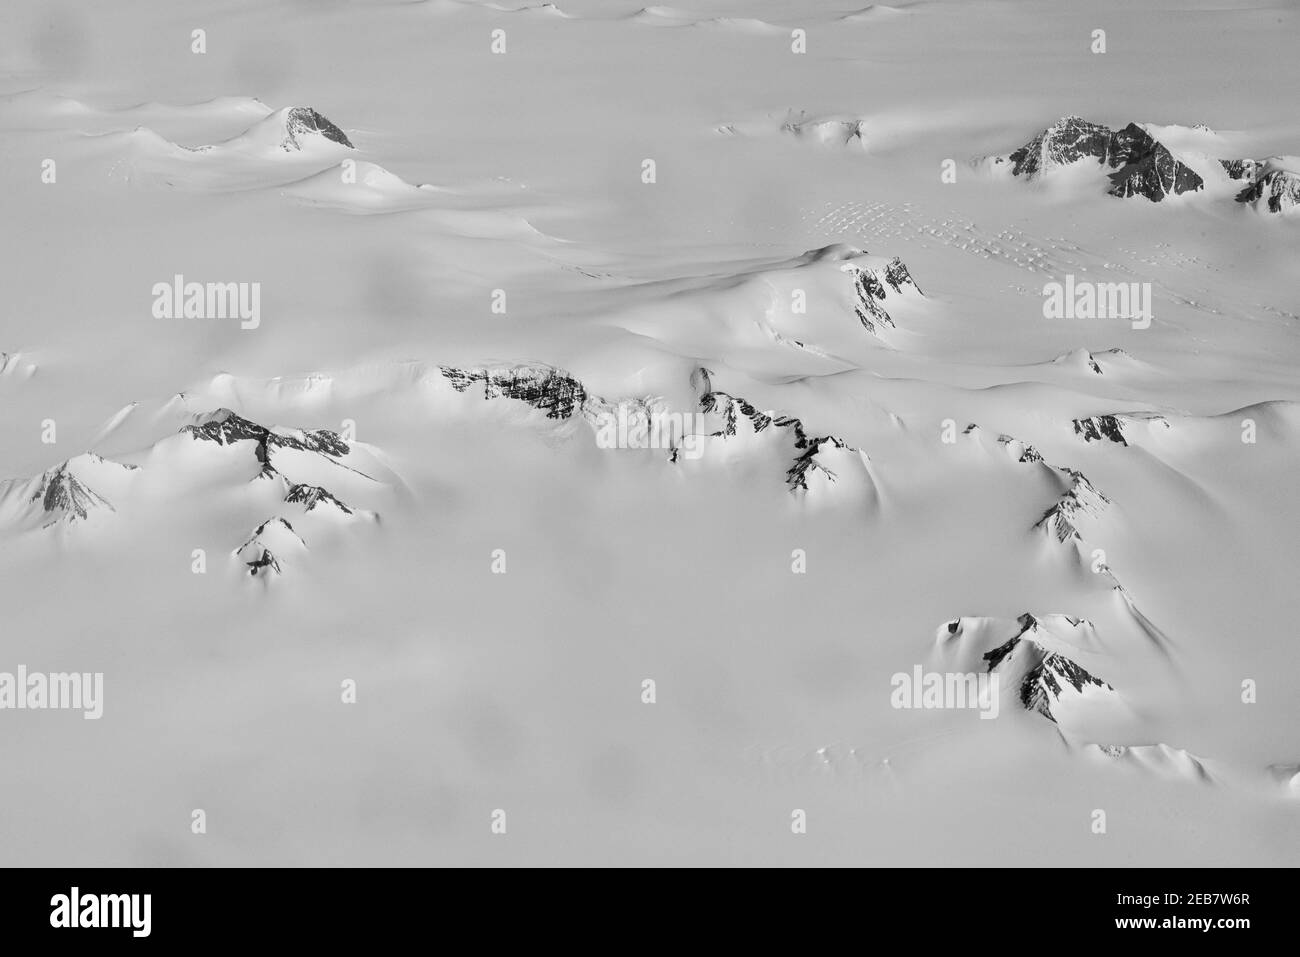 Prise de vue aérienne des champs enneigés du Groenland capturés au cours de la journée à partir d'un avion Banque D'Images